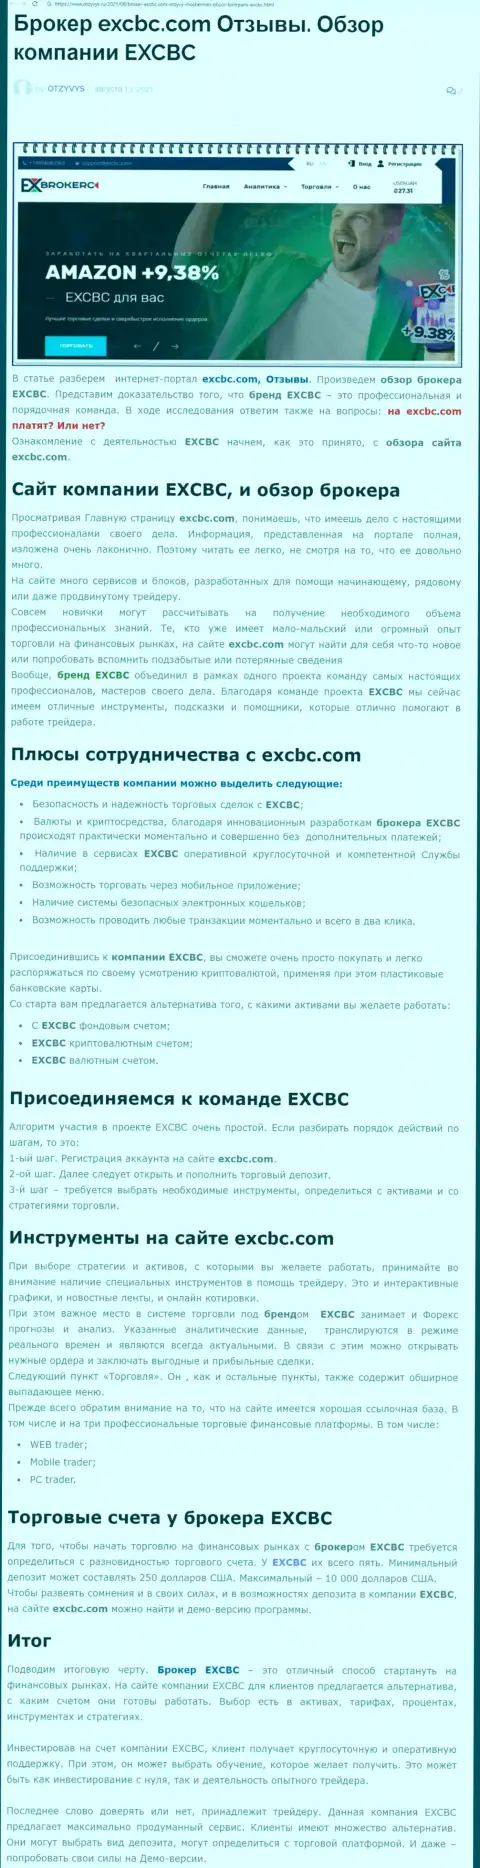 EXCBC - это ответственная и порядочная Форекс компания, это следует из материала на интернет-портале отзывс ру